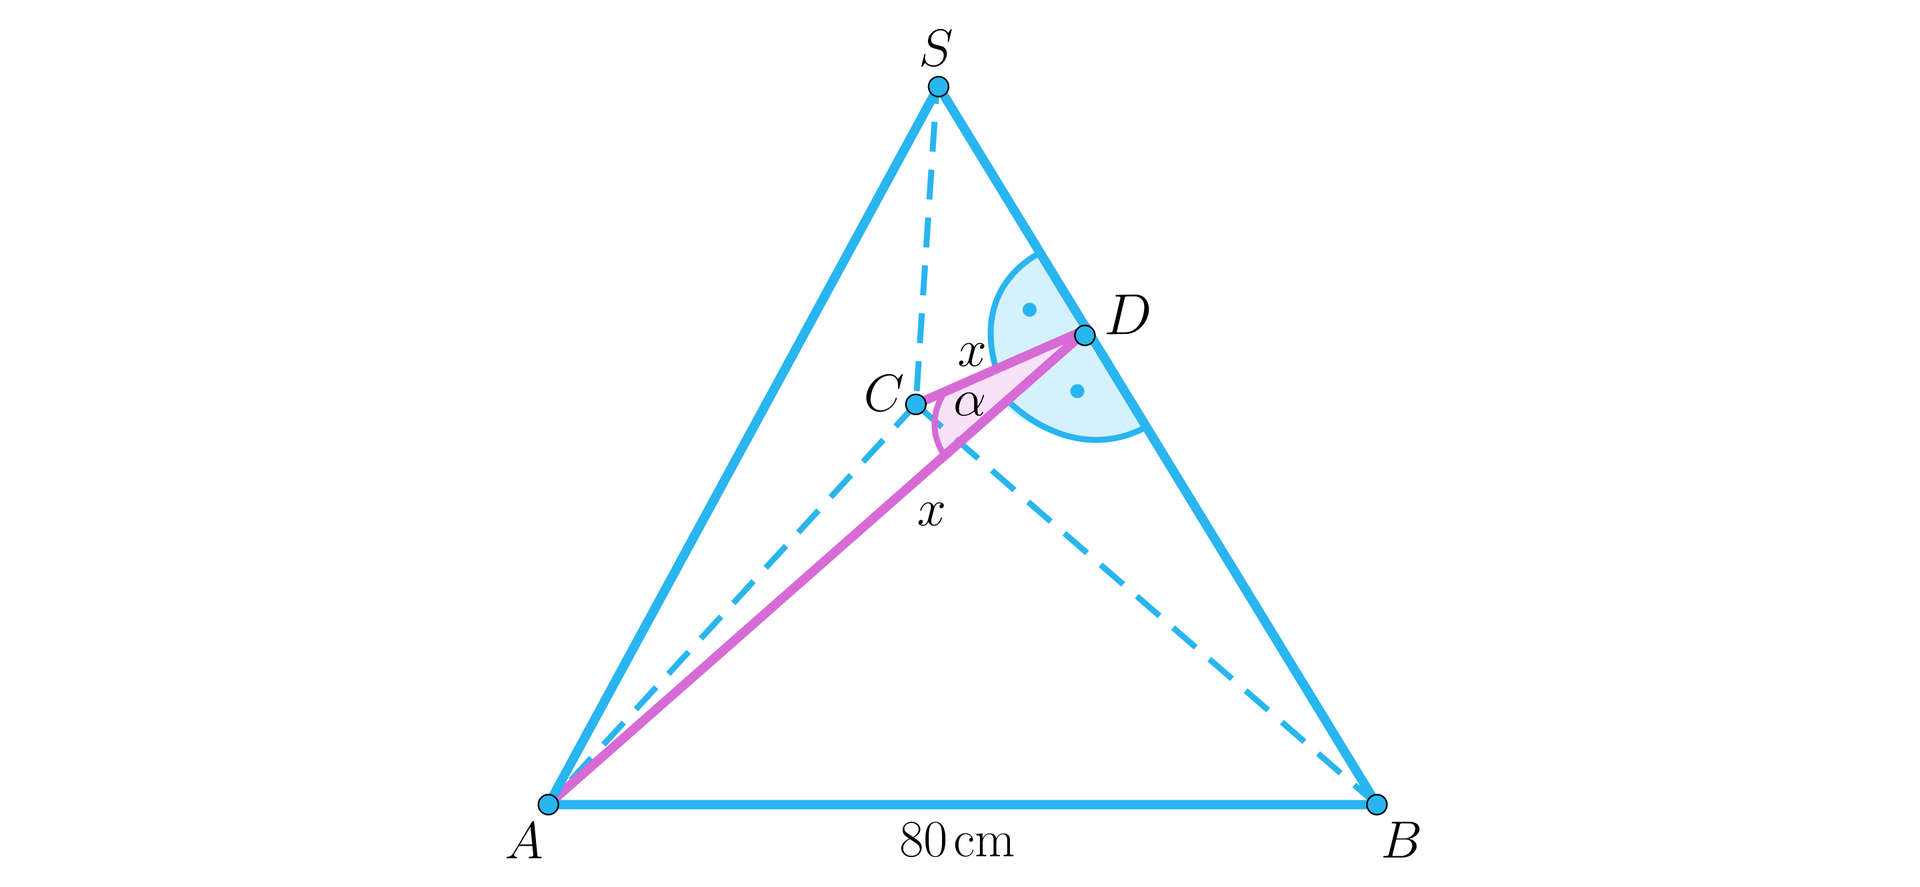 Ilustracja przedstawia ostrosłup o podstawie trójkąta A B C, długość krawędzi AB wynosi 80 centymetrów. Wierzchołek górny ostrosłupa podpisano literą S. W ścianie bocznej A B S zaznaczono wysokość, opuszczoną z wierzchołka A na krawędź BS, spodek tej wysokości podpisano literą D. W ścianie BCS również zaznaczono wysokość opuszczoną z wierzchołka C na krawędź BS, długość tej wysokości ma długość x, a spodek tej wysokości to punkt D. Kąt ADC podpisano literą alfa.    